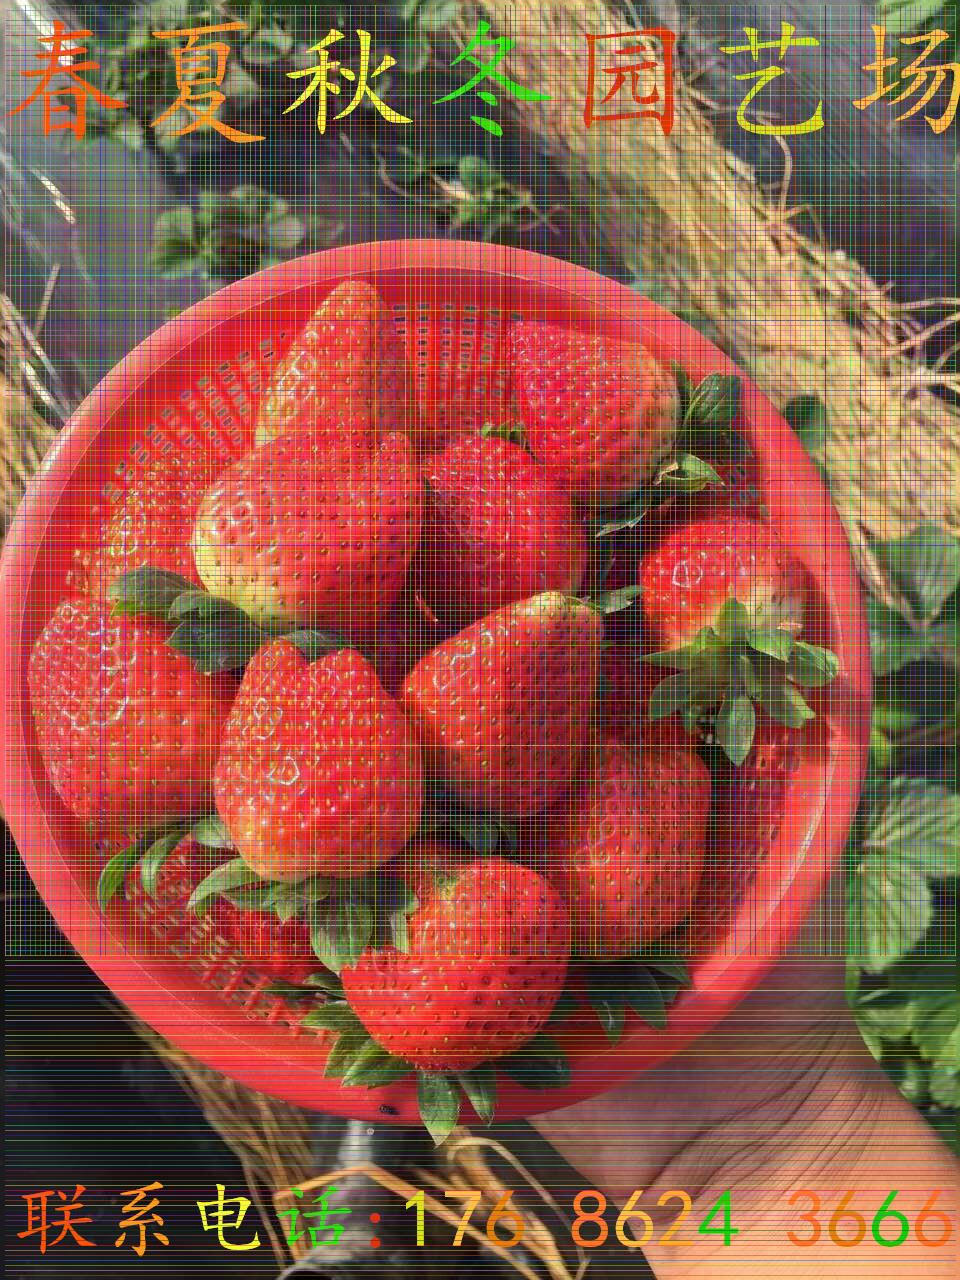 庆阳佐贺清香草莓苗哪里有卖的一株多少钱